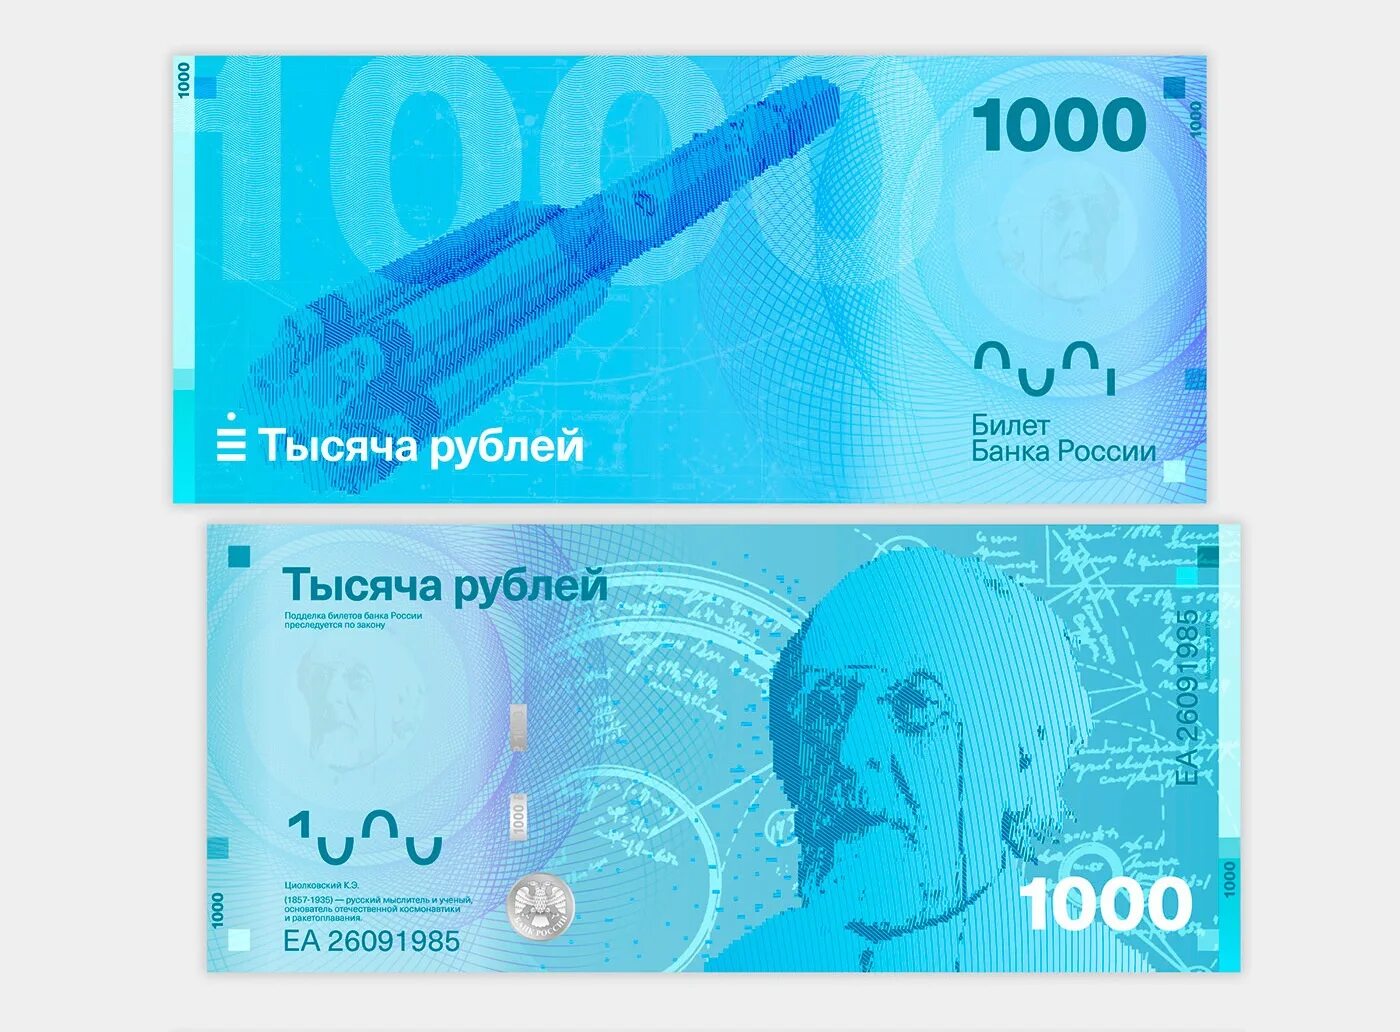 Как выглядят новые рубли. Новый дизайн банкнот. Концепт новых банкнот. Новый дизайн российских банкнот. Редизайн банкнот.